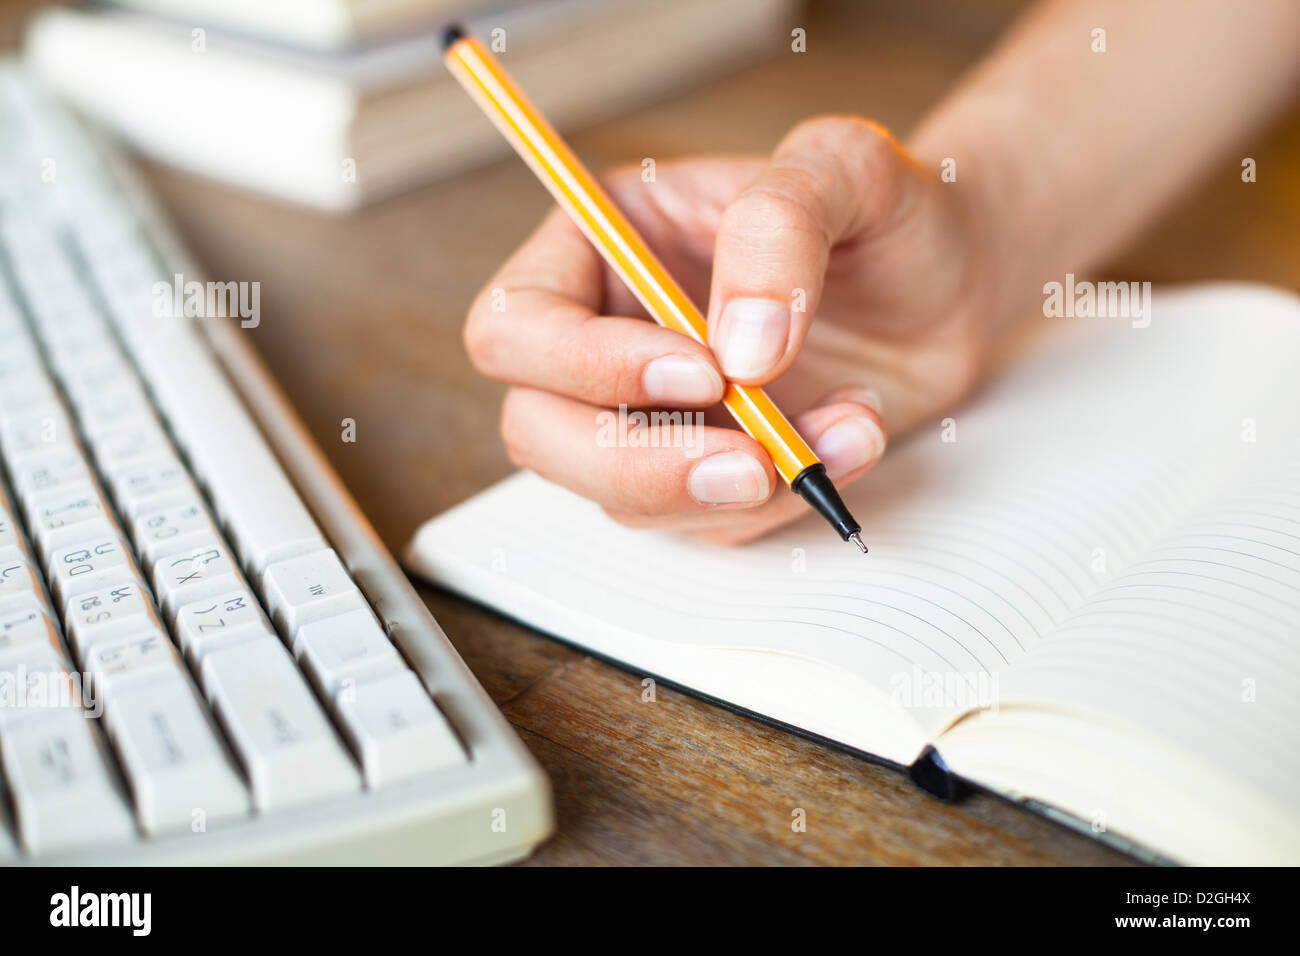 Mani scrive una penna in un notebook, una tastiera, una pila di libri in background. Foto Stock